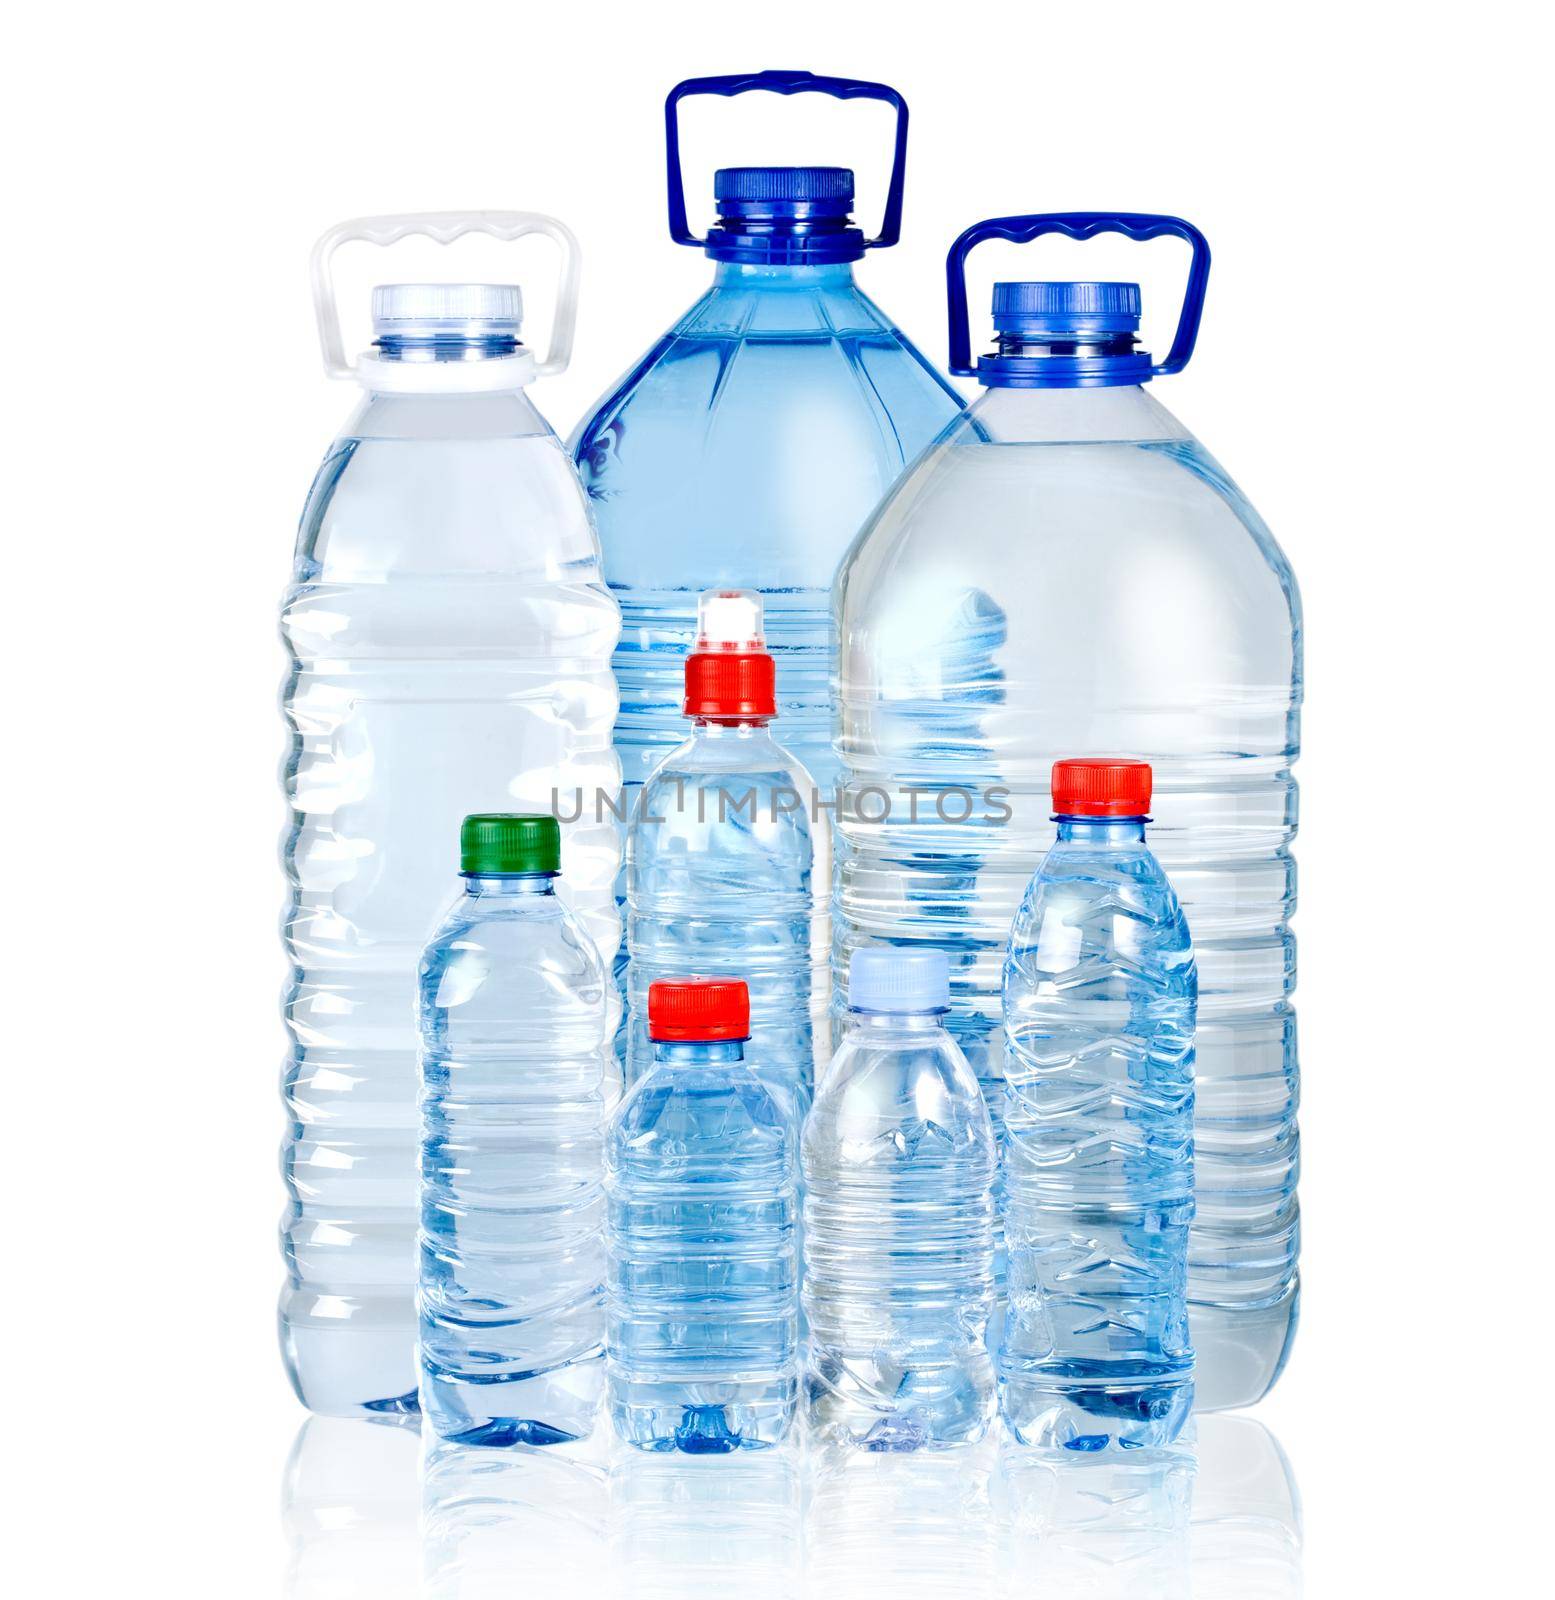 bottles of water by kornienko